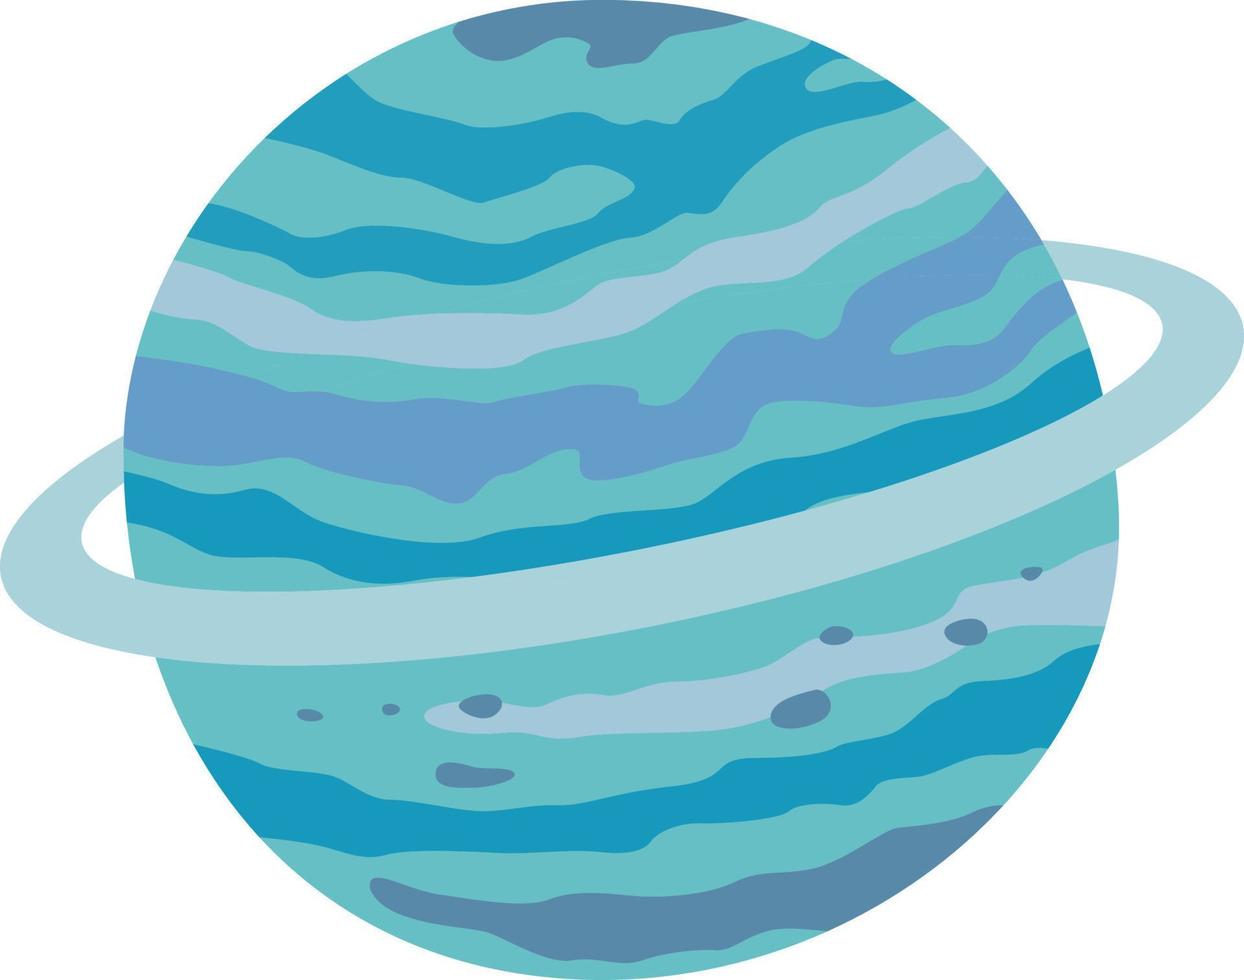 pianeta Urano illustrazione vettore